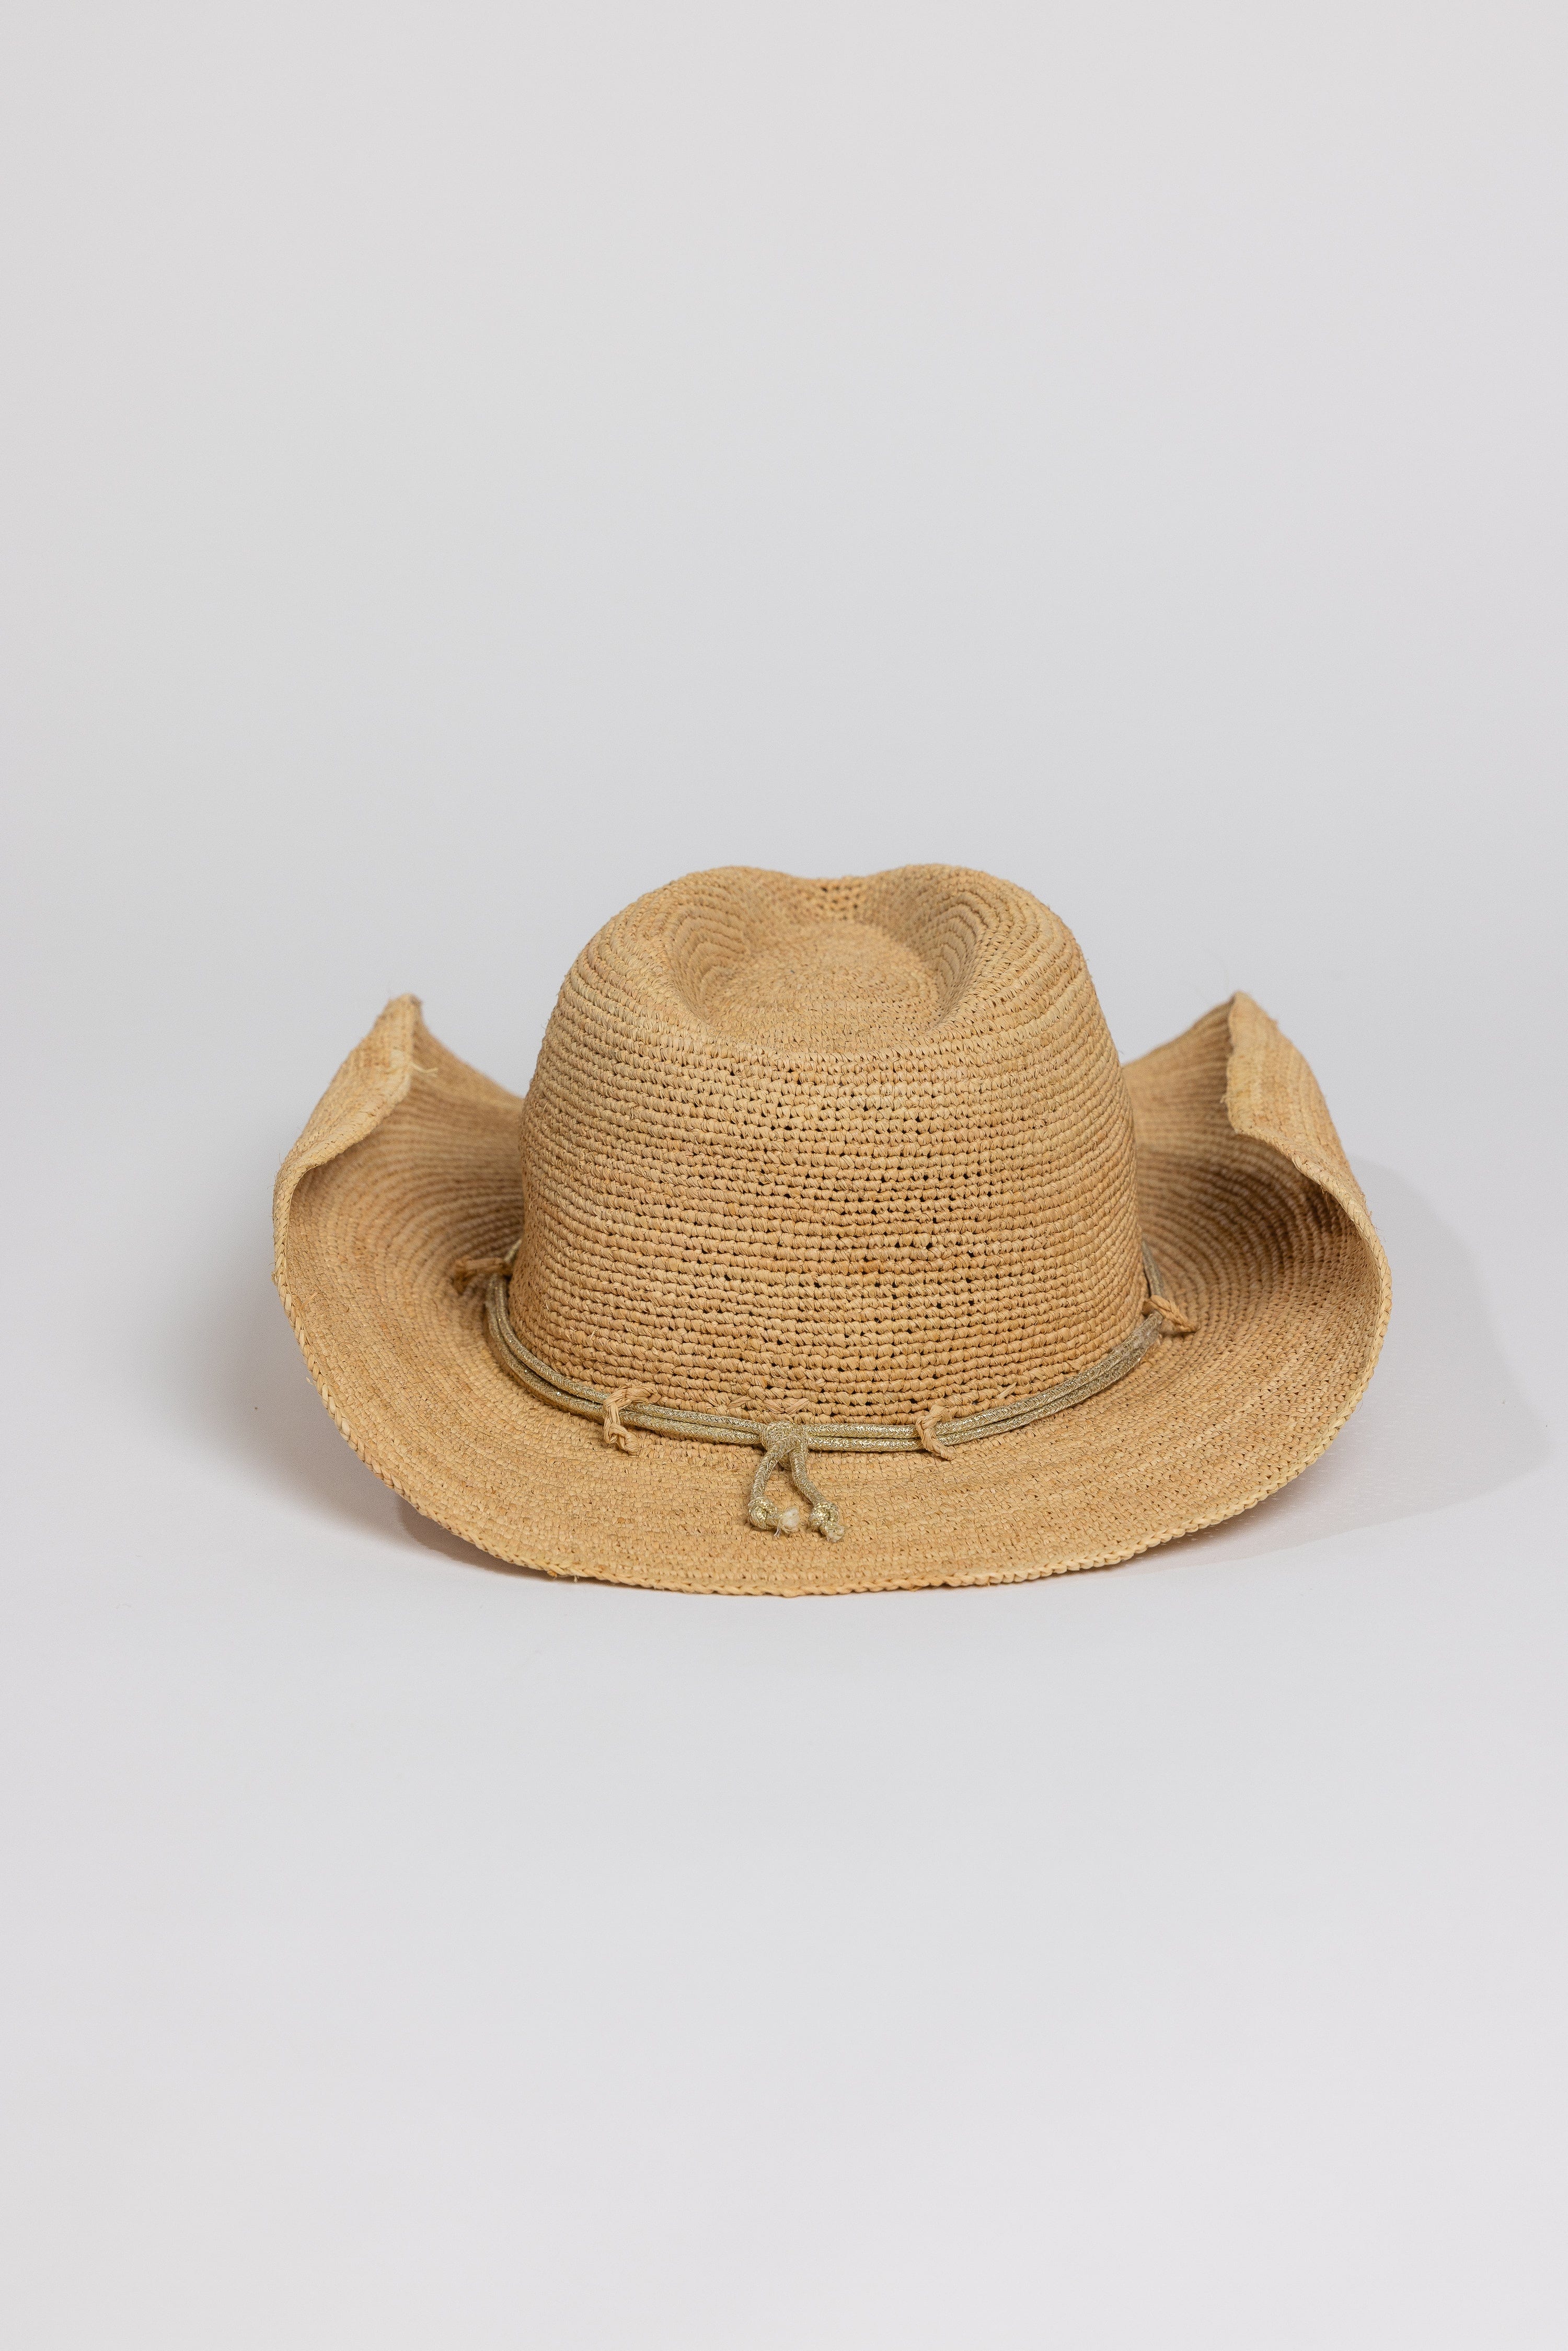 Raffia Crotchet Cowboy Hat